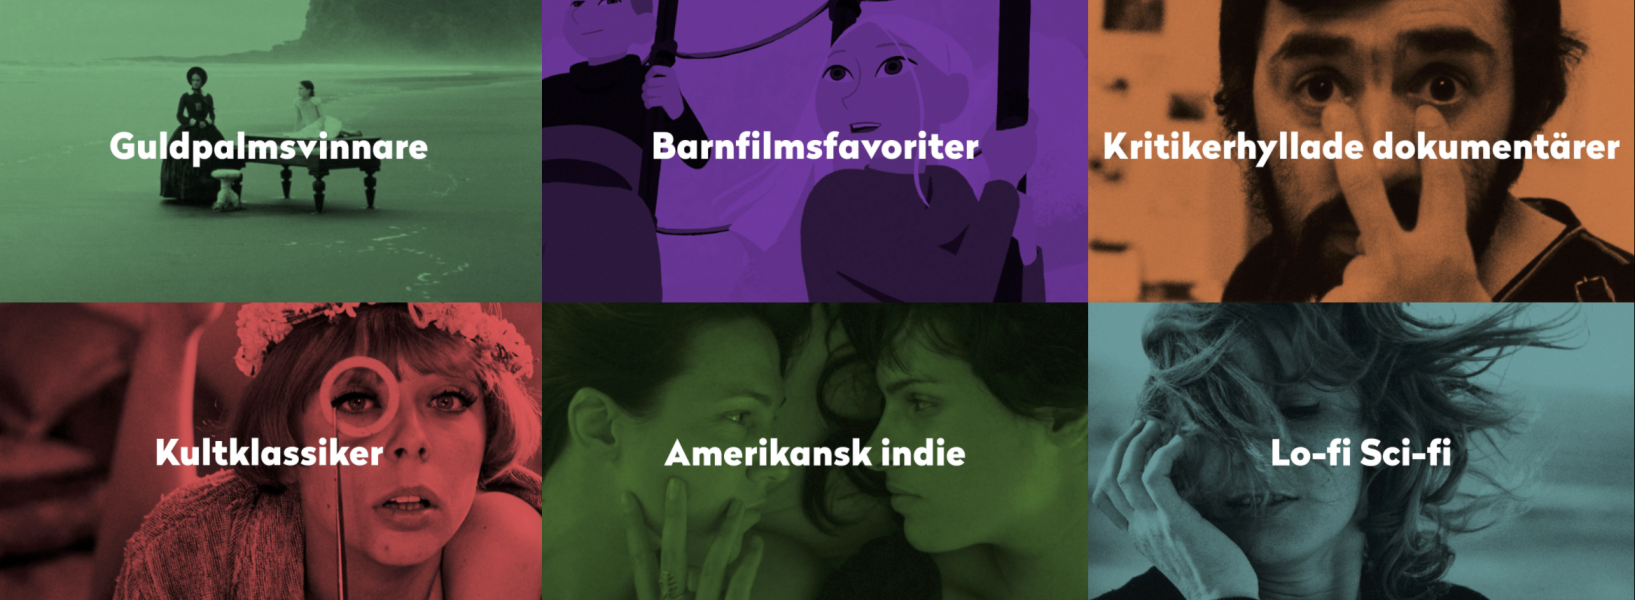 Göteborgs filmfestivals strömningstjänst Draken Film lanserar nya bioaktuella filmer och skänker hälften av prenumerationsintäkterna till kvalitetsfilmbiografer.